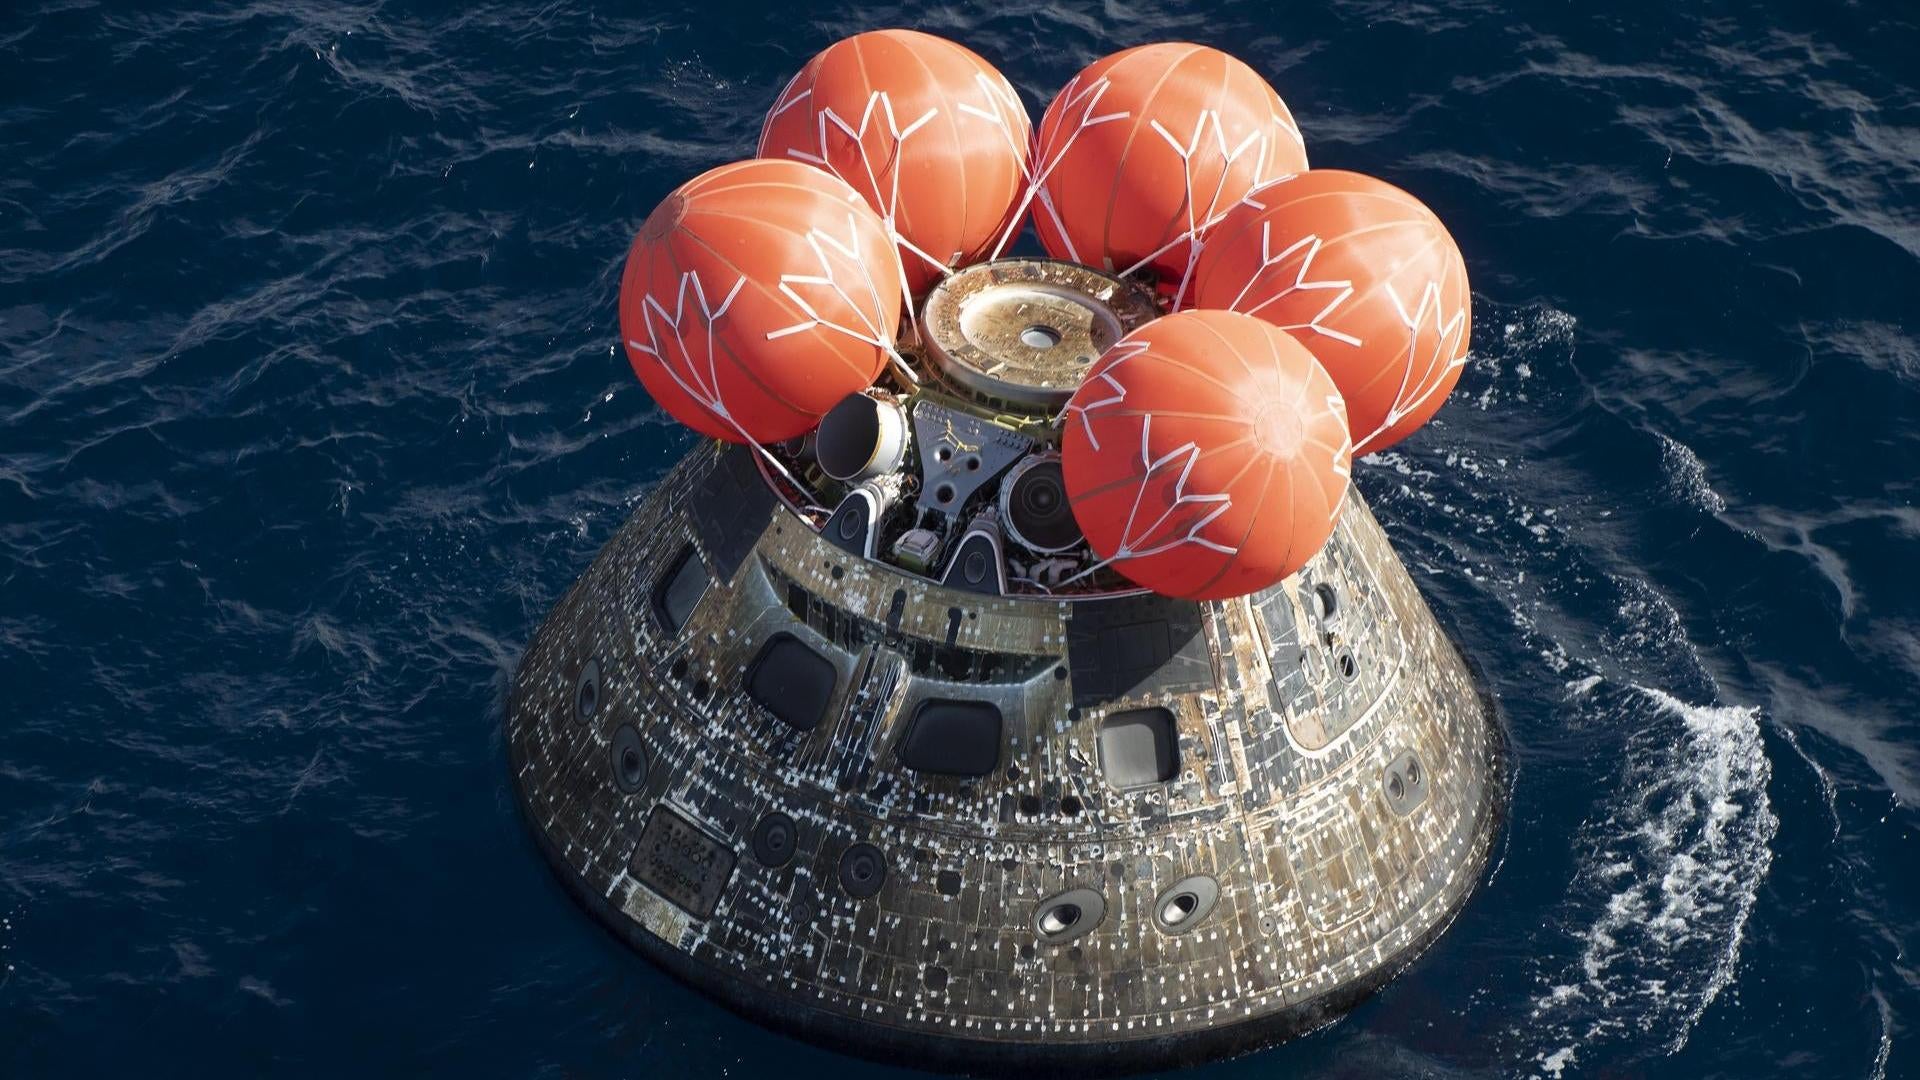 Z raportu wynika, że ​​problemy bezpieczeństwa związane z kapsułą księżycową NASA stanowią „znaczne ryzyko” dla załogi Artemis 2